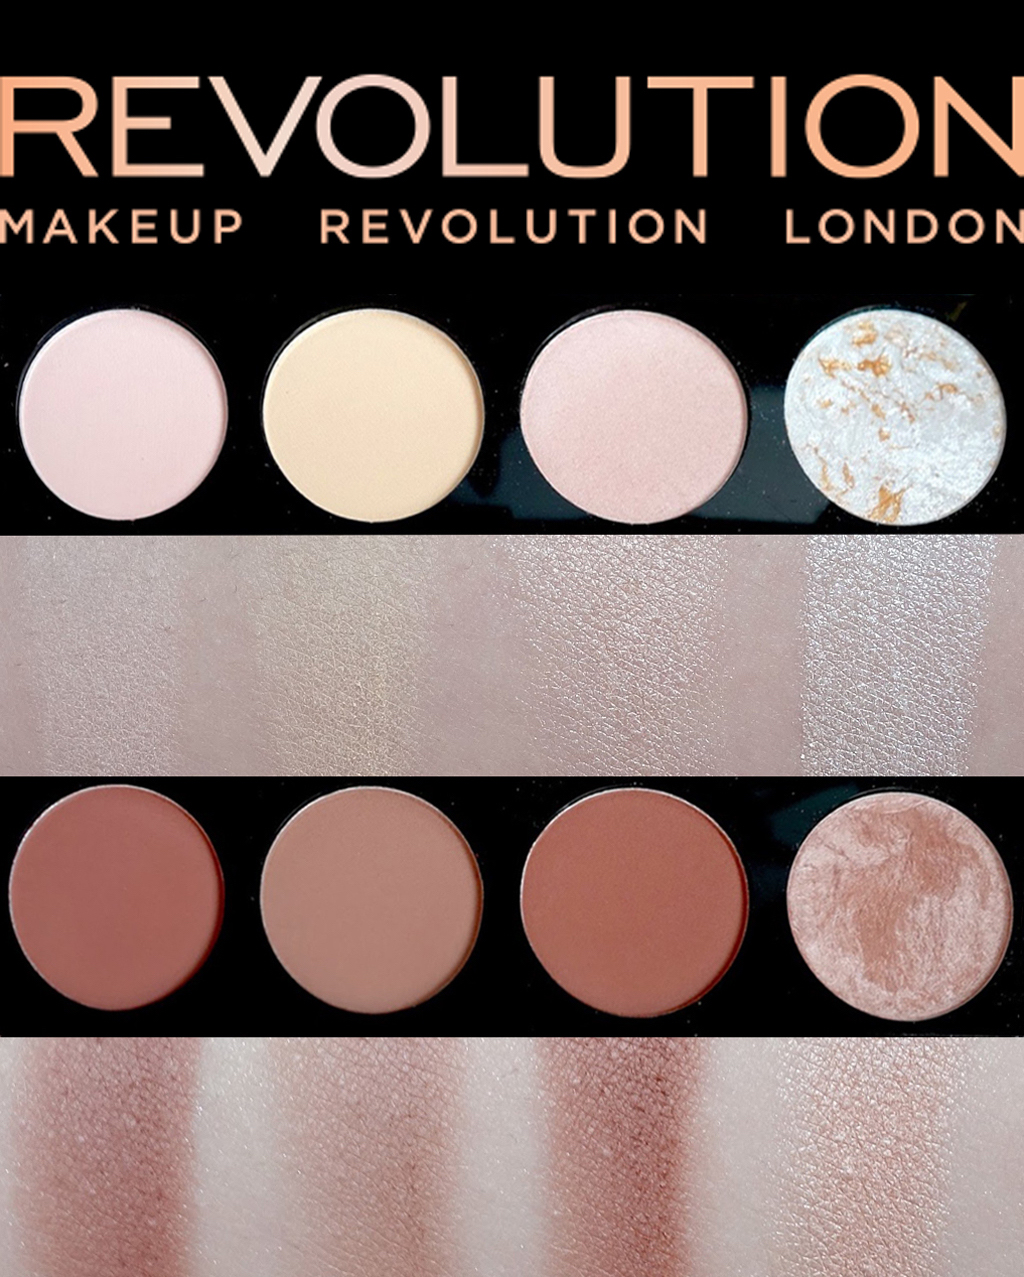 Revolution london makeup palette